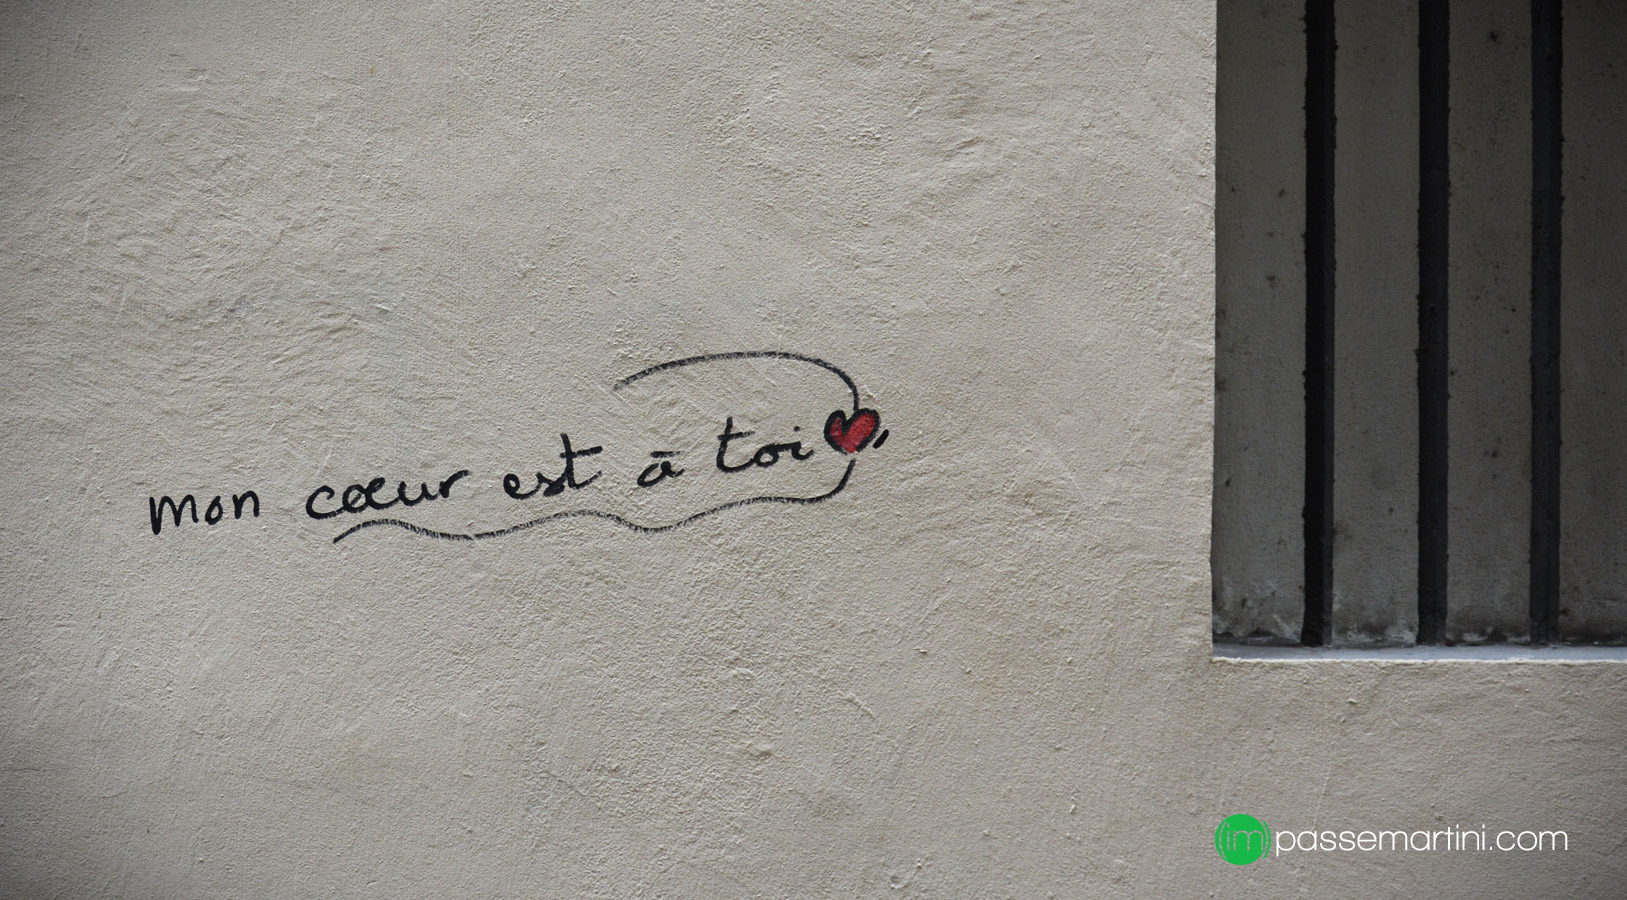 " Street  Art et de l'Amour Autour "